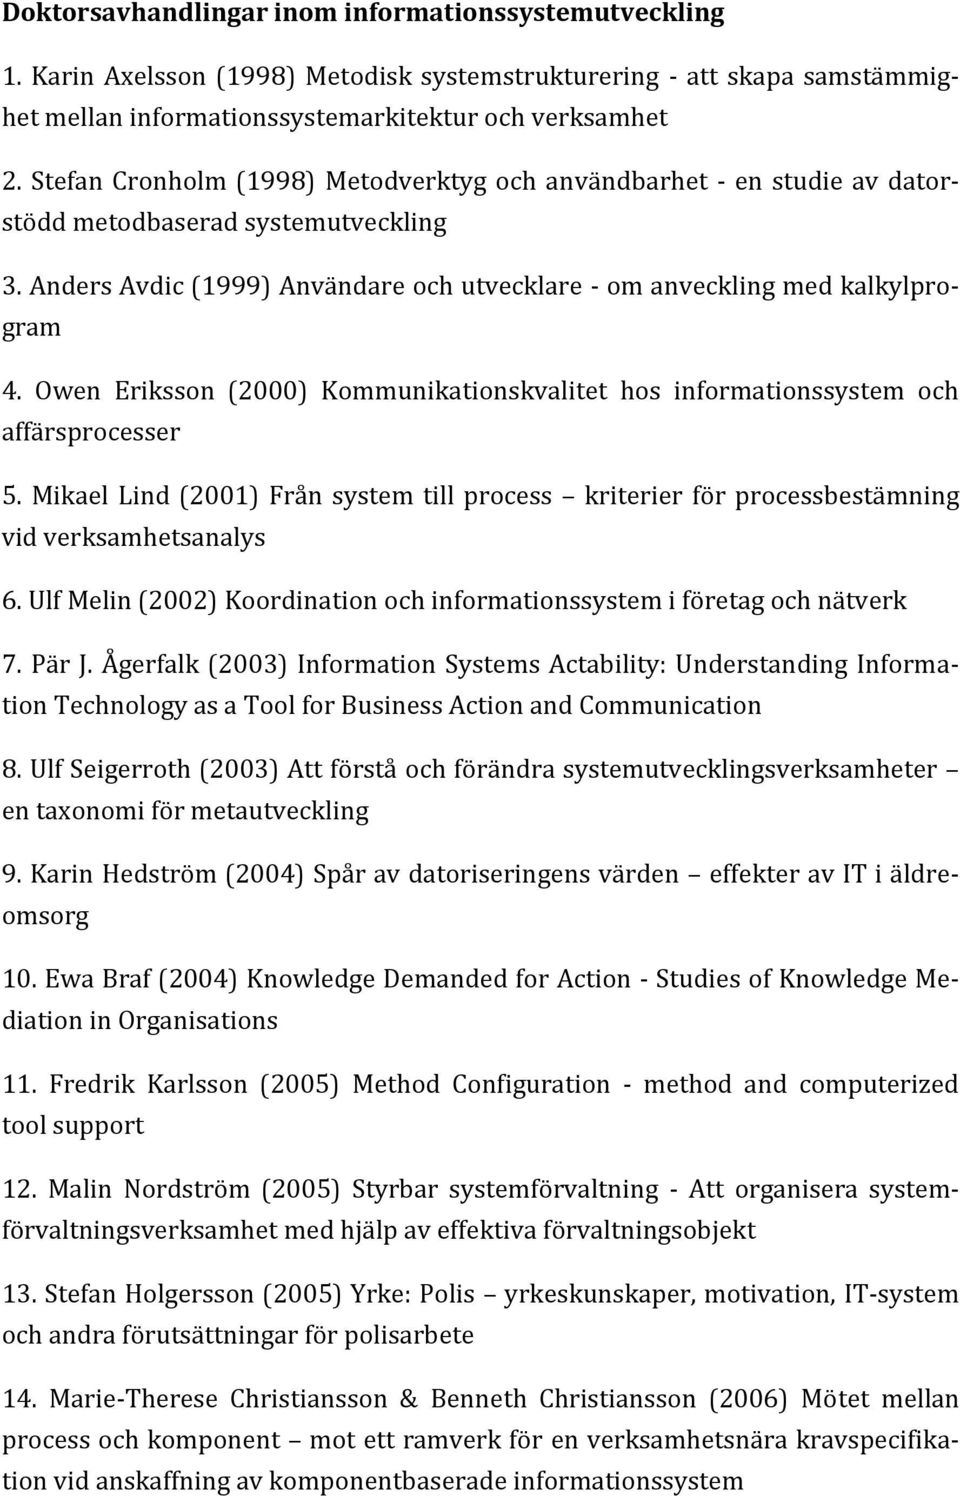 Owen Eriksson (2000) Kommunikationskvalitet hos informationssystem och affärsprocesser 5. Mikael Lind (2001) Från system till process kriterier för processbestämning vid verksamhetsanalys 6.